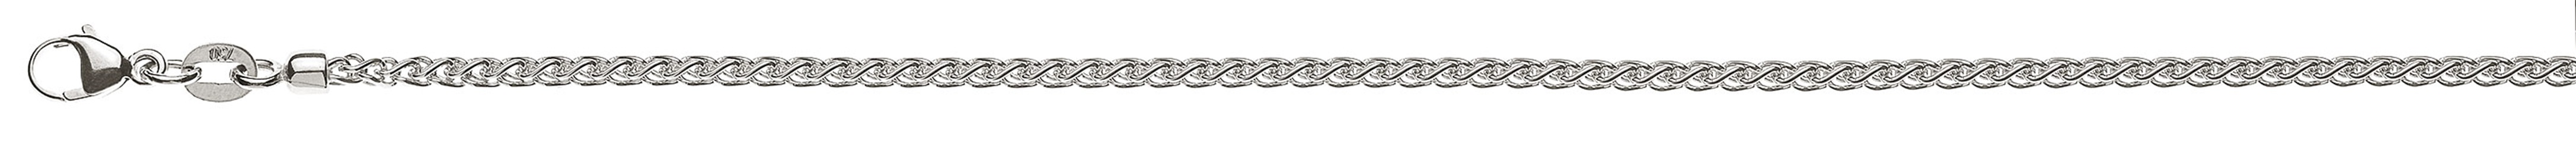 AURONOS Prestige Halskette Weissgold 18K Zopfkette 40cm 2.15mm